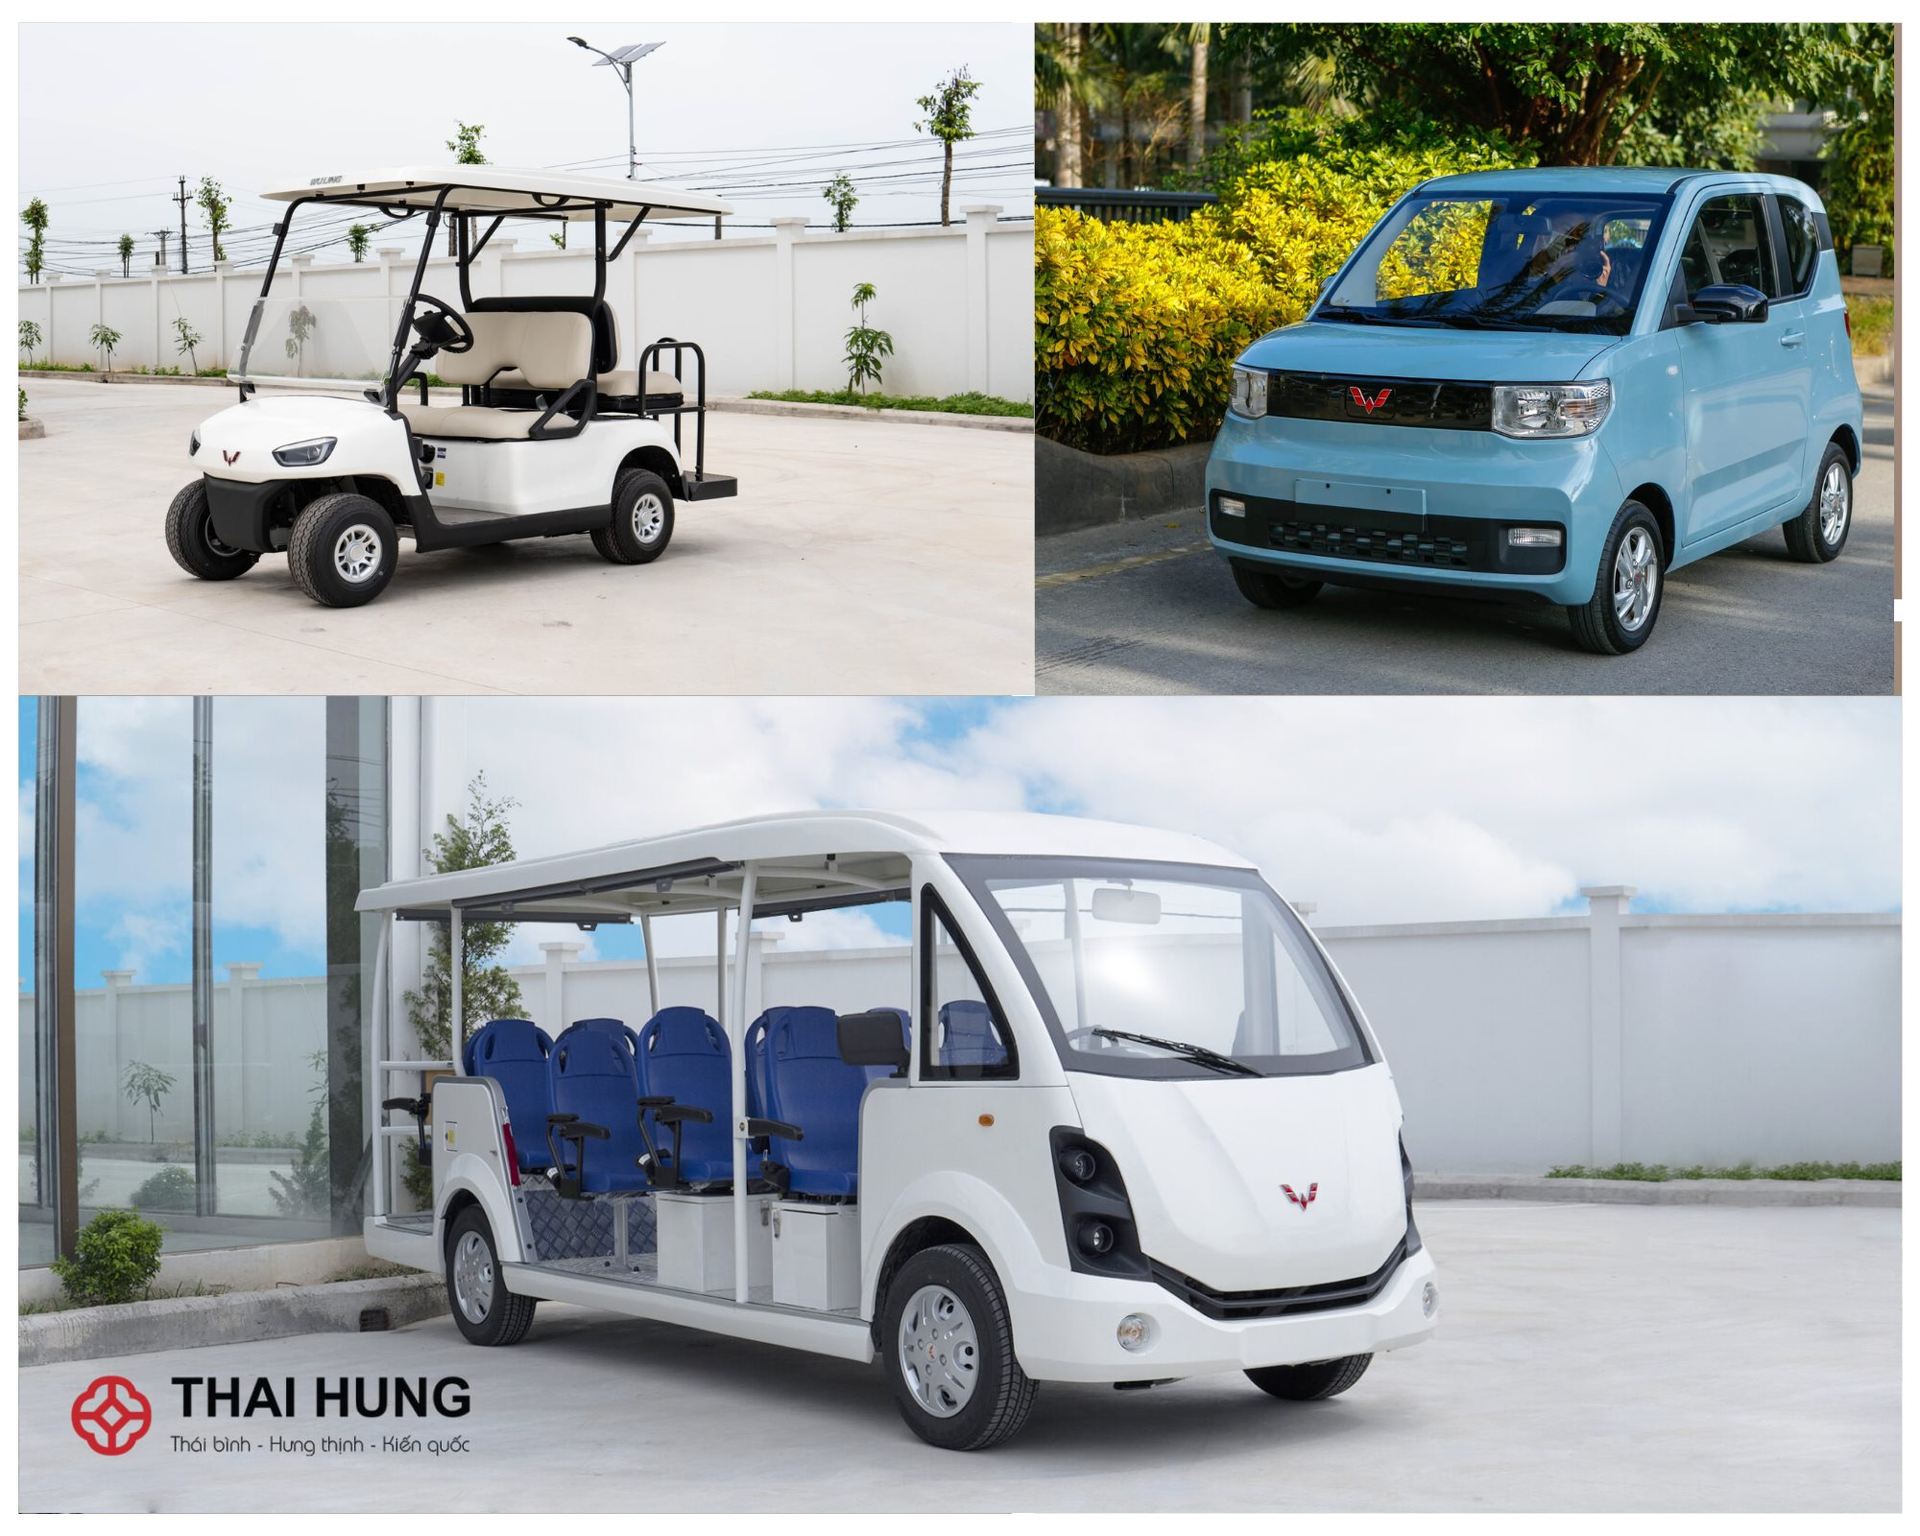 DN làm ô tô điện cỡ nhỏ cùng địa bàn Thái Bình với Geleximco: VĐL 100 tỷ, đã sản xuất hàng loạt xe điện từ xe golf, xe tuần tra, xe bệnh viện đến xe bán hàng lưu động - Ảnh 2.